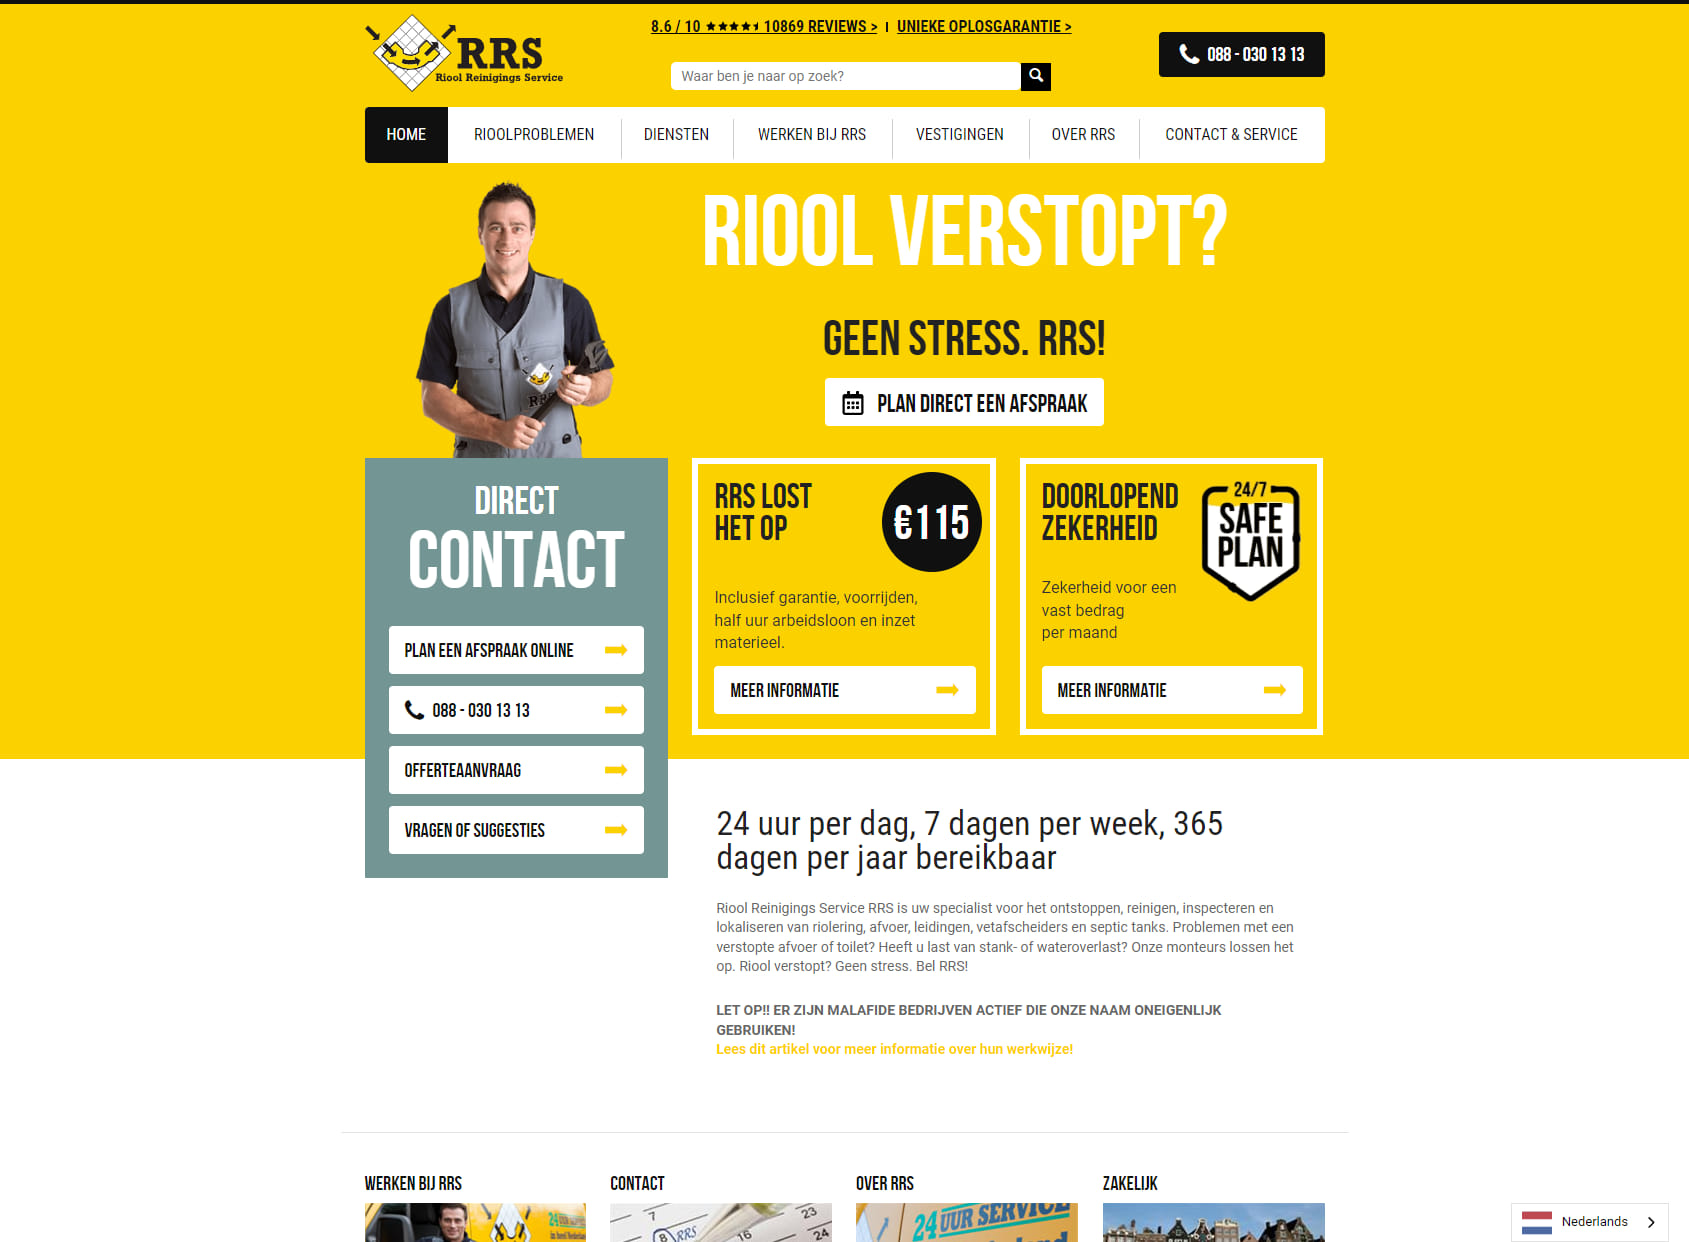 Riool Reinigings Service RRS, Den Bosch